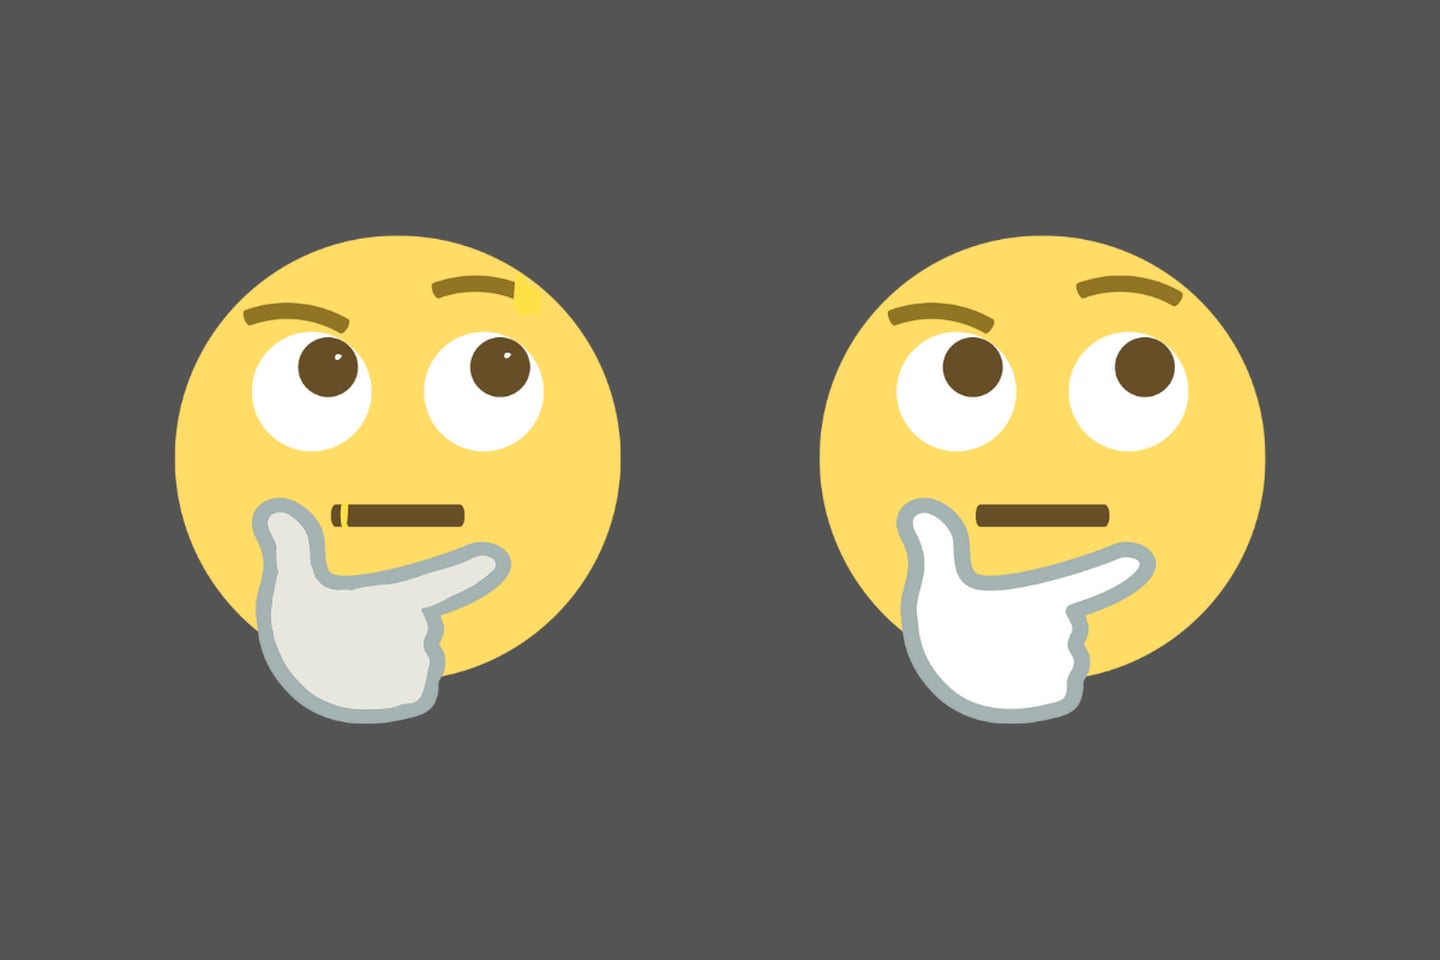 dos emojis iguales, con solo cuatro diferencias ocultas.